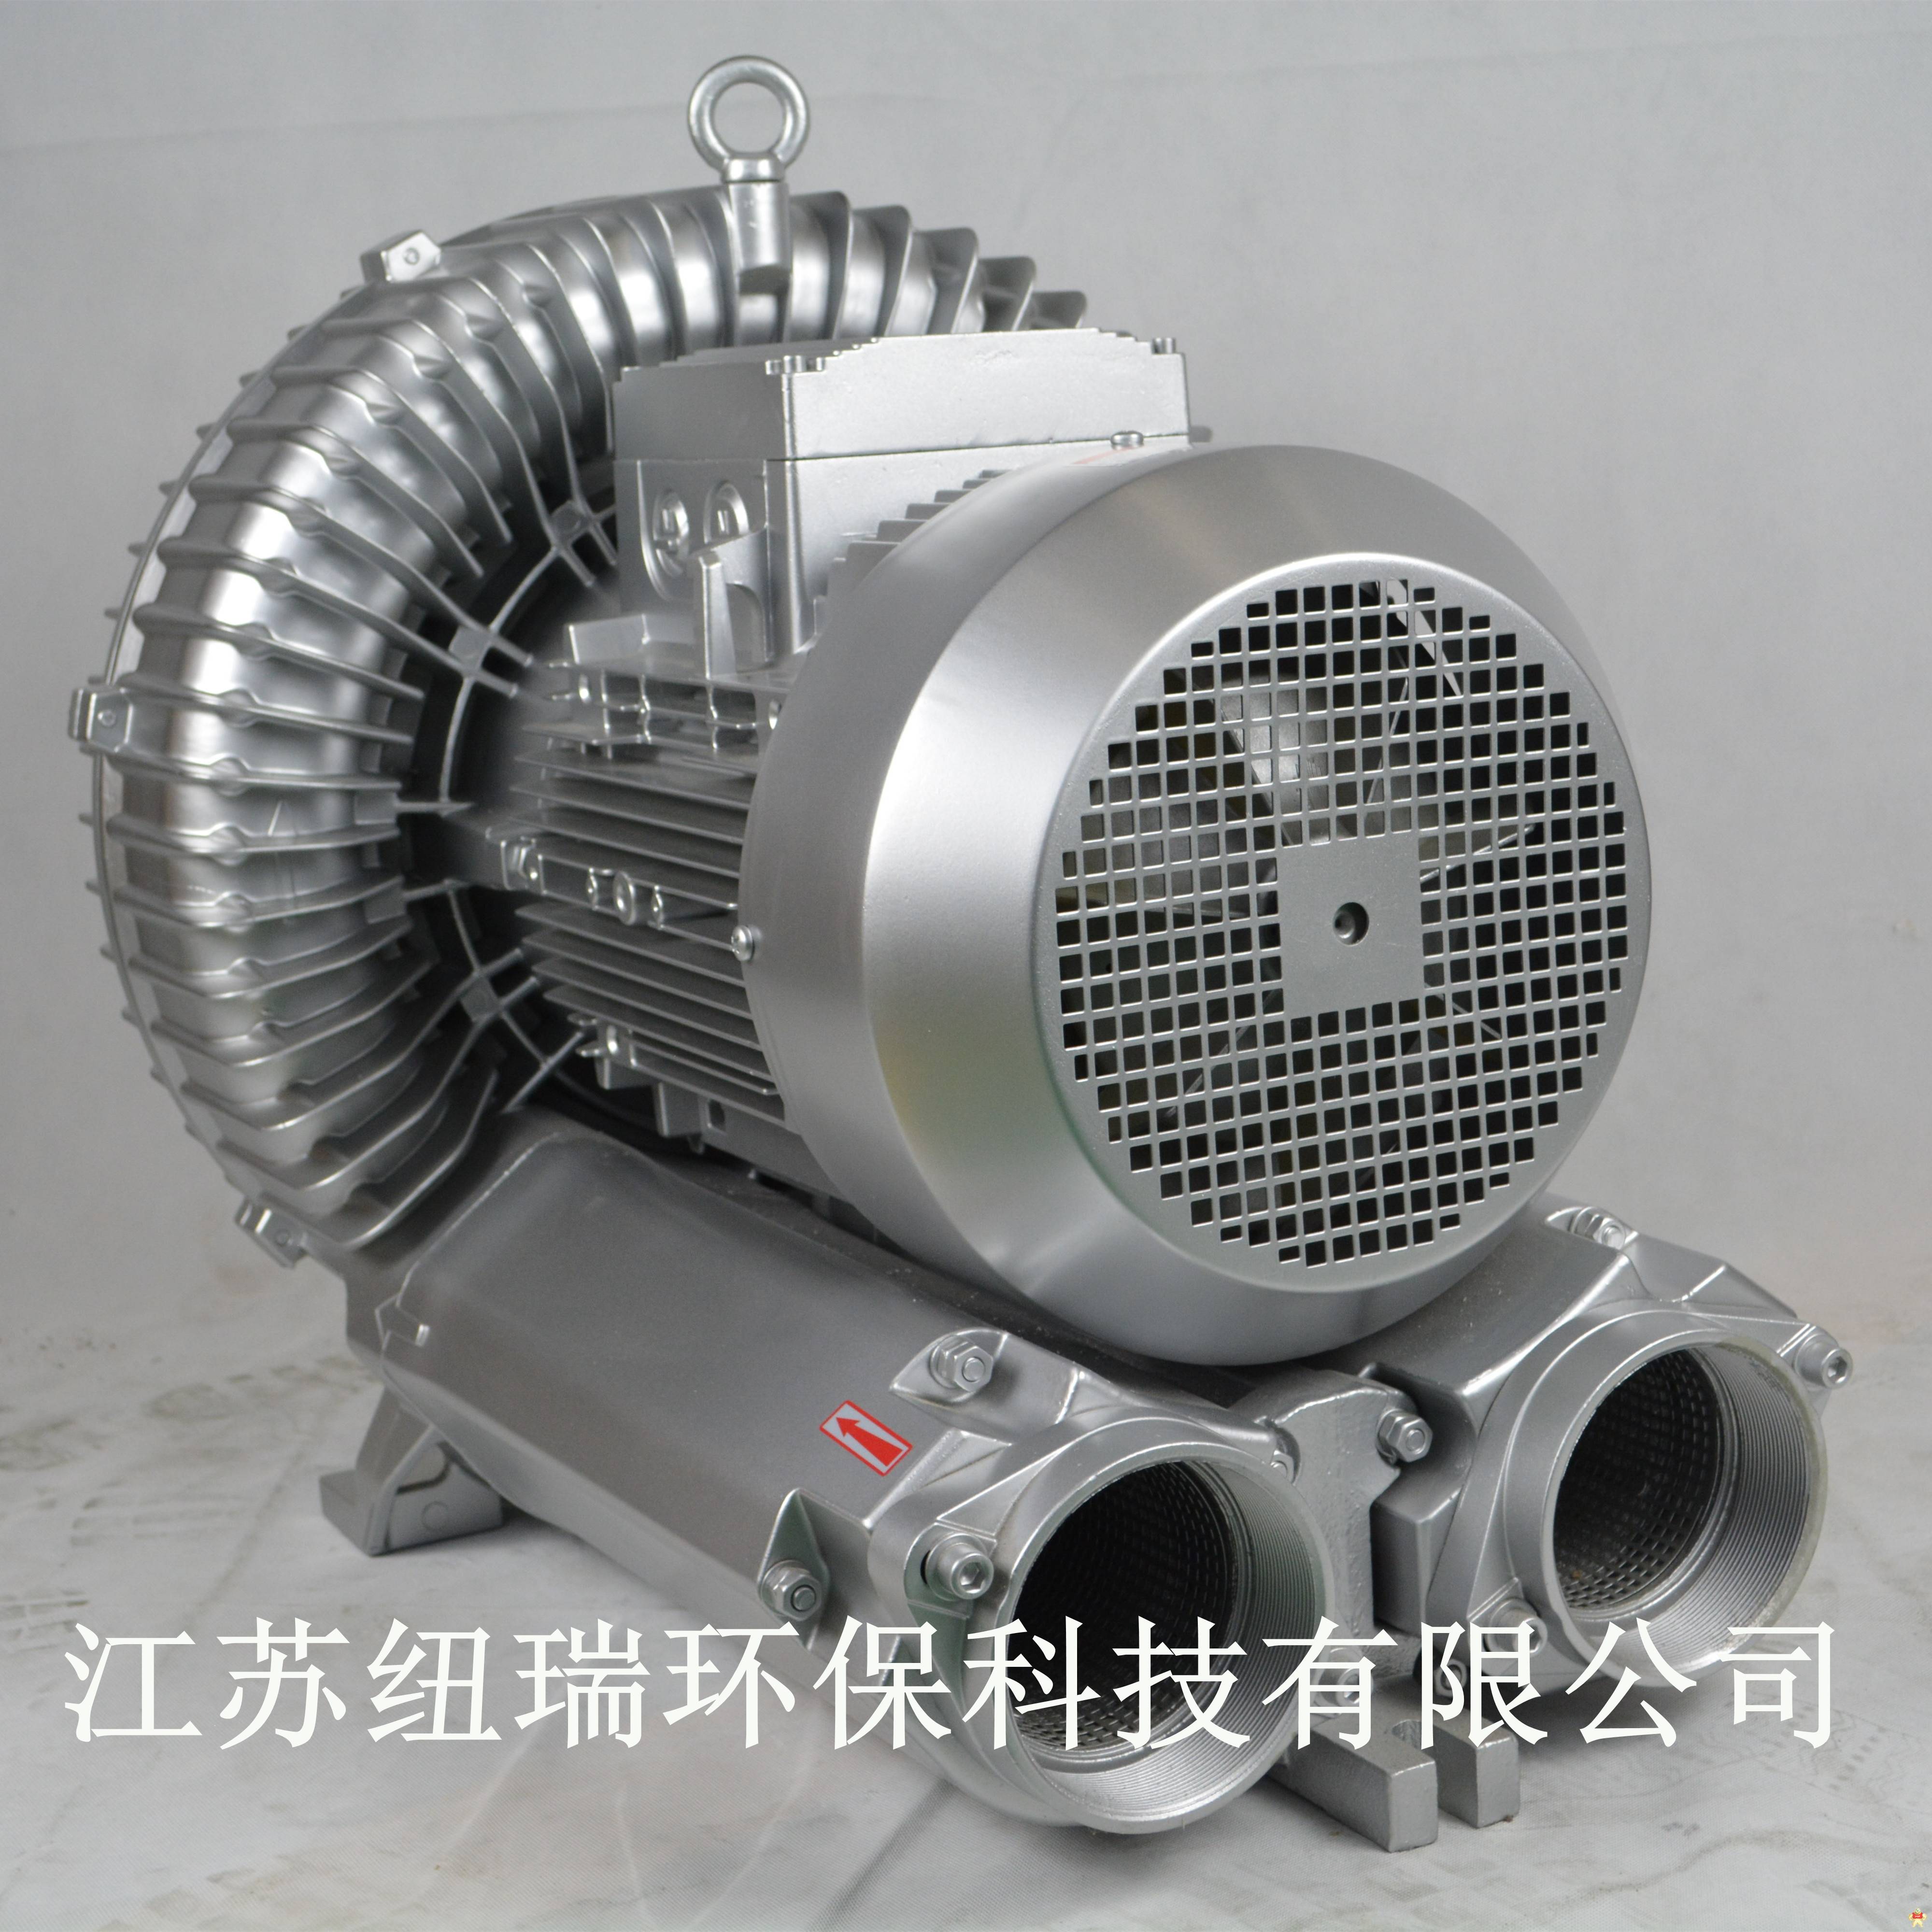 工业***旋涡气泵 高压旋涡气泵,旋涡气泵用途,集尘漩涡气泵,高压风机,高压风机厂家